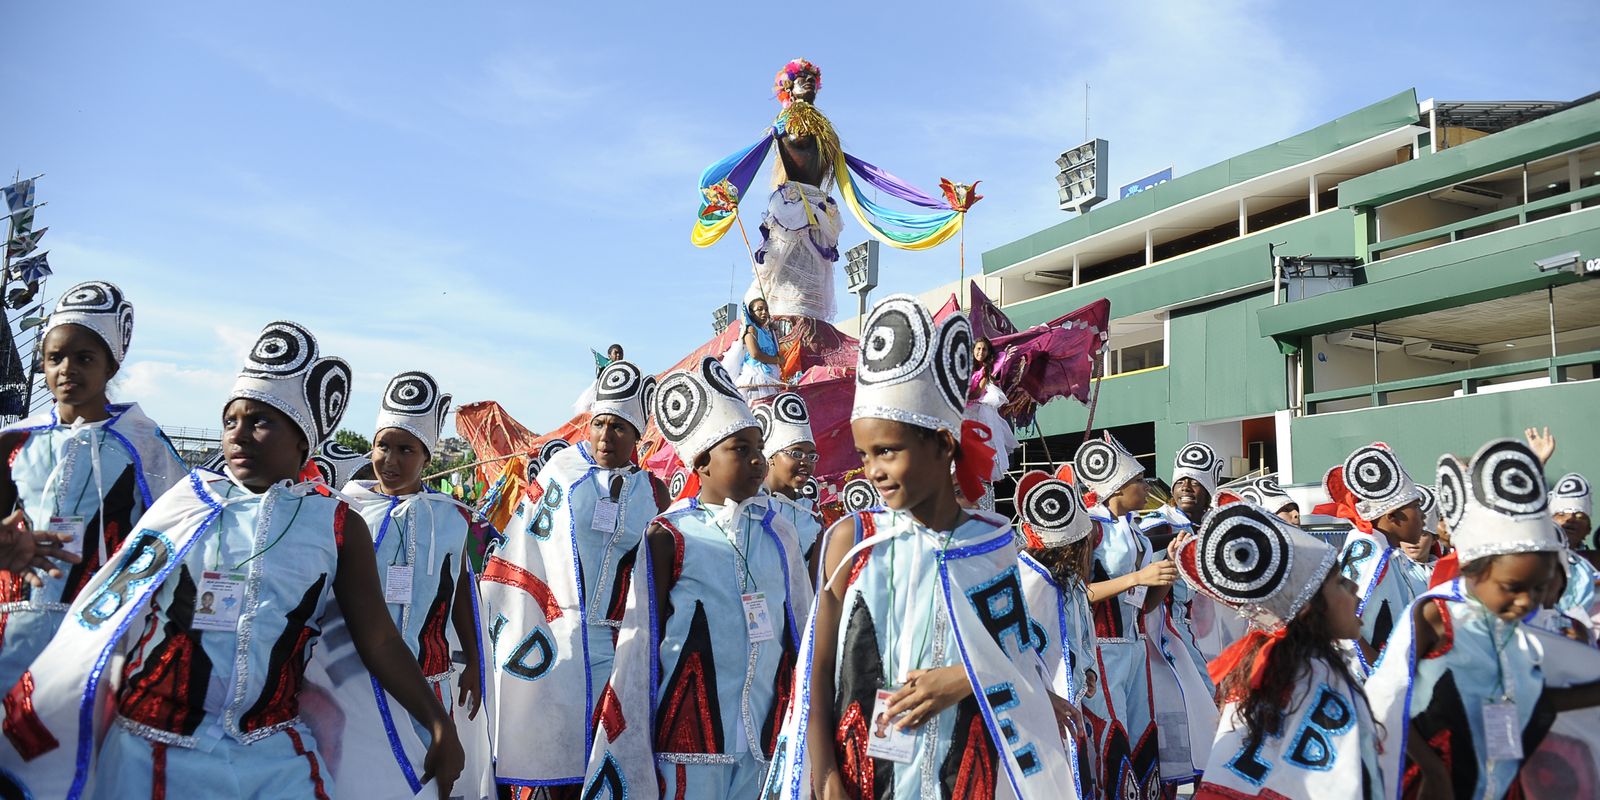 Carnaval também é assunto para criança no Rio de Janeiro